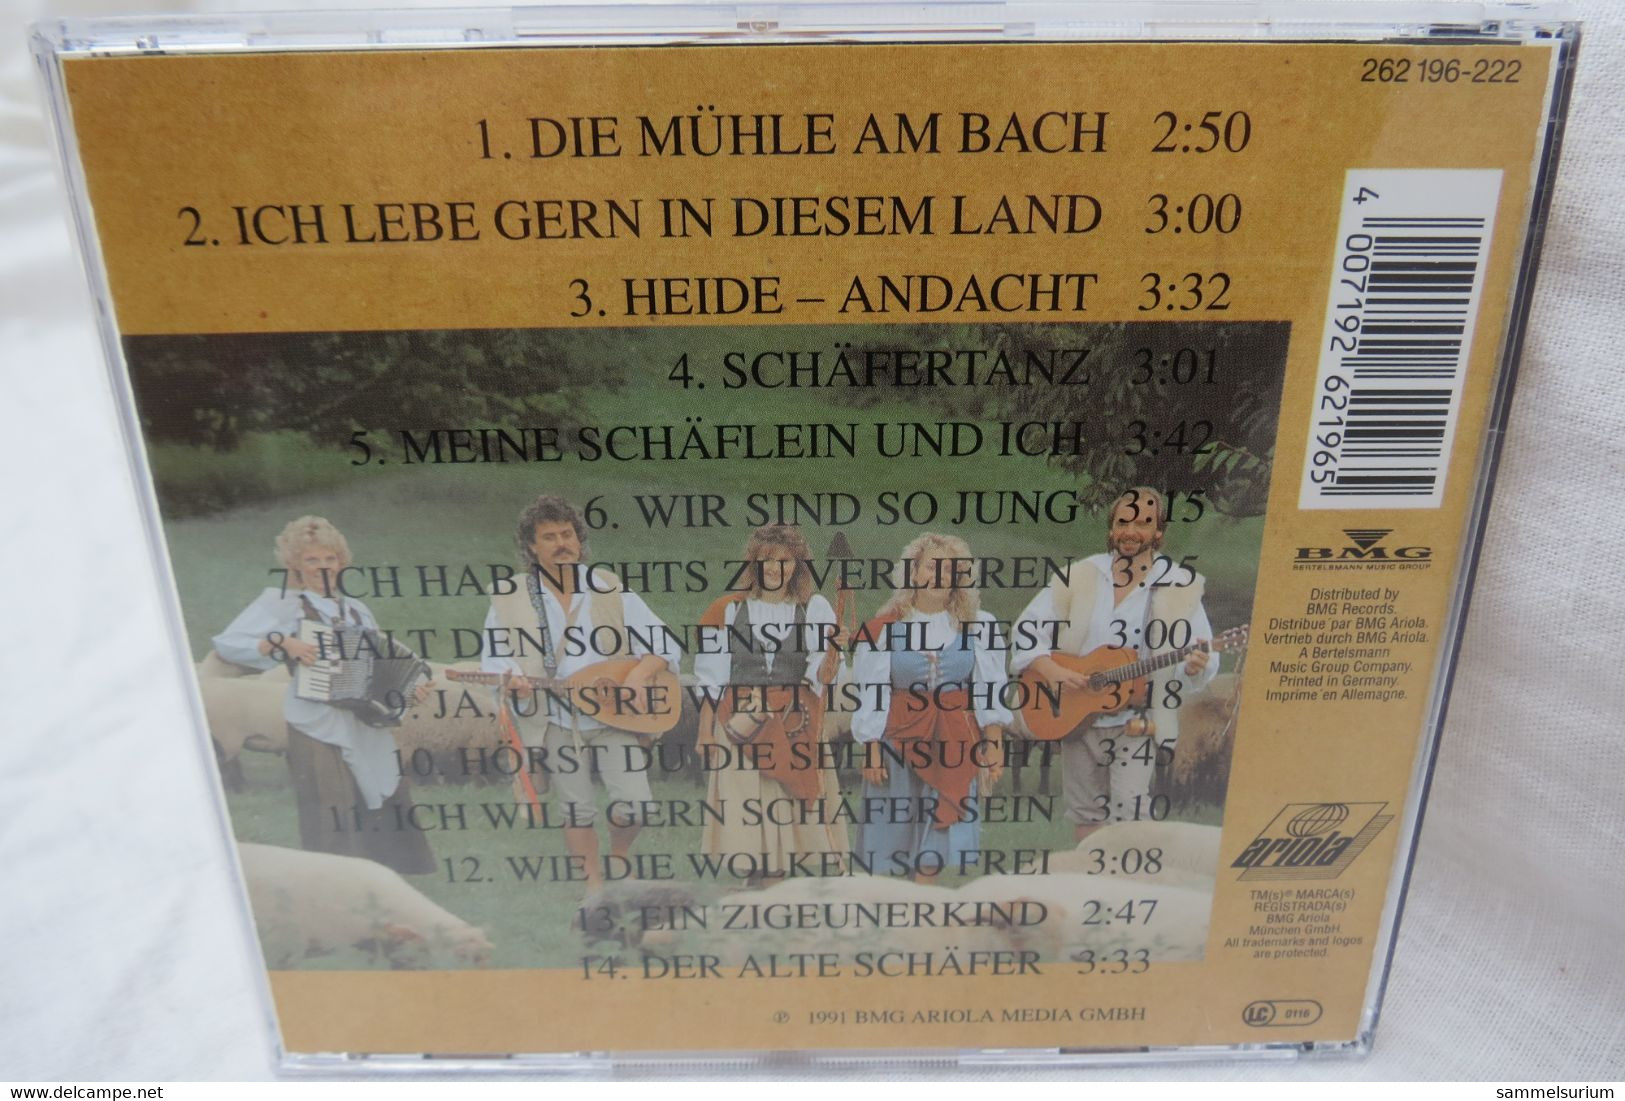 CD "Die Schäfer" Ich Lebe Gern In Diesem Land - Sonstige - Deutsche Musik